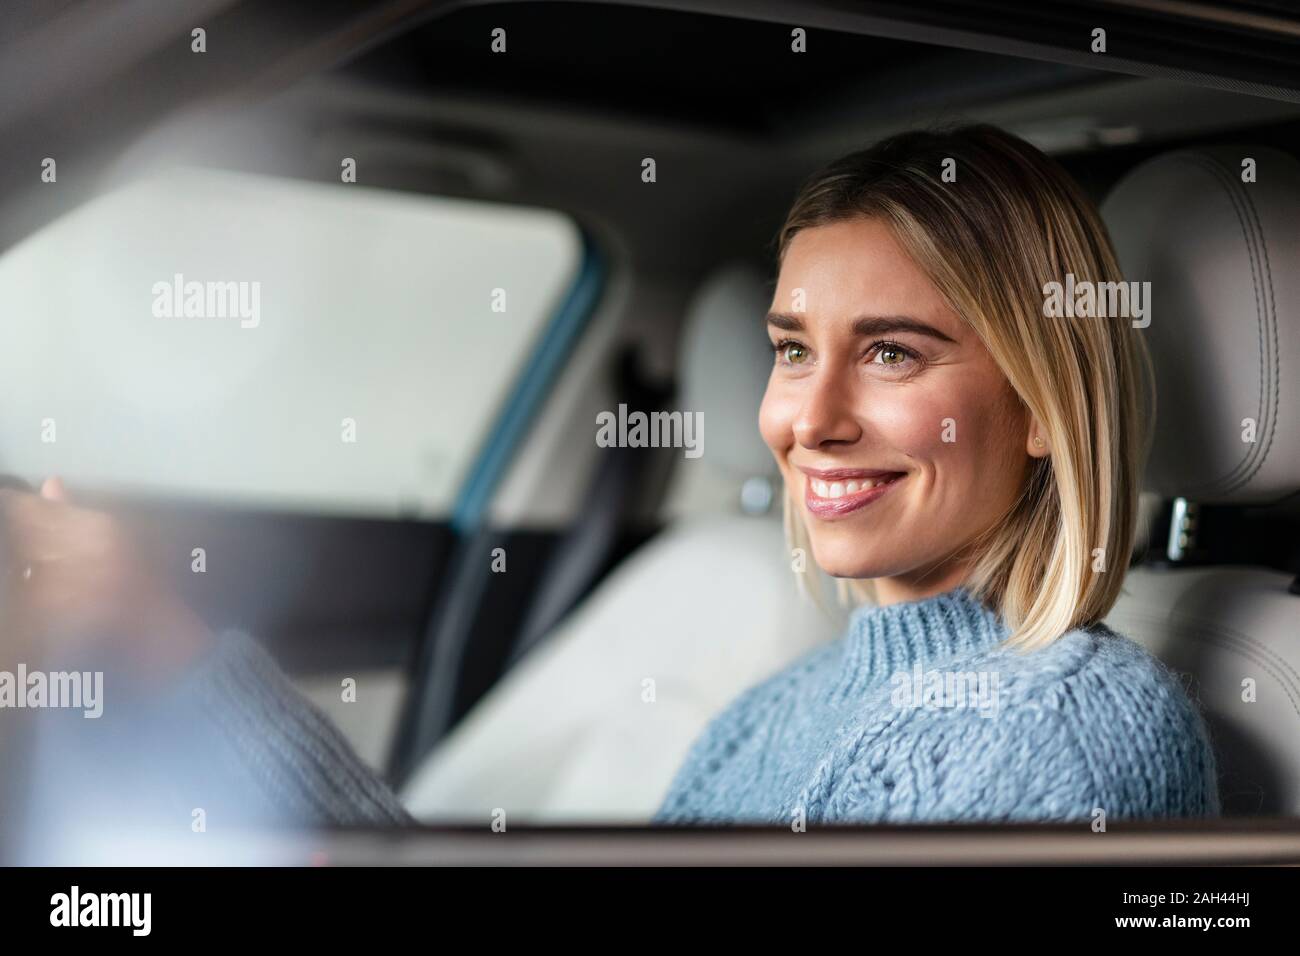 Retrato de mujer sonriente conduciendo un coche Foto de stock